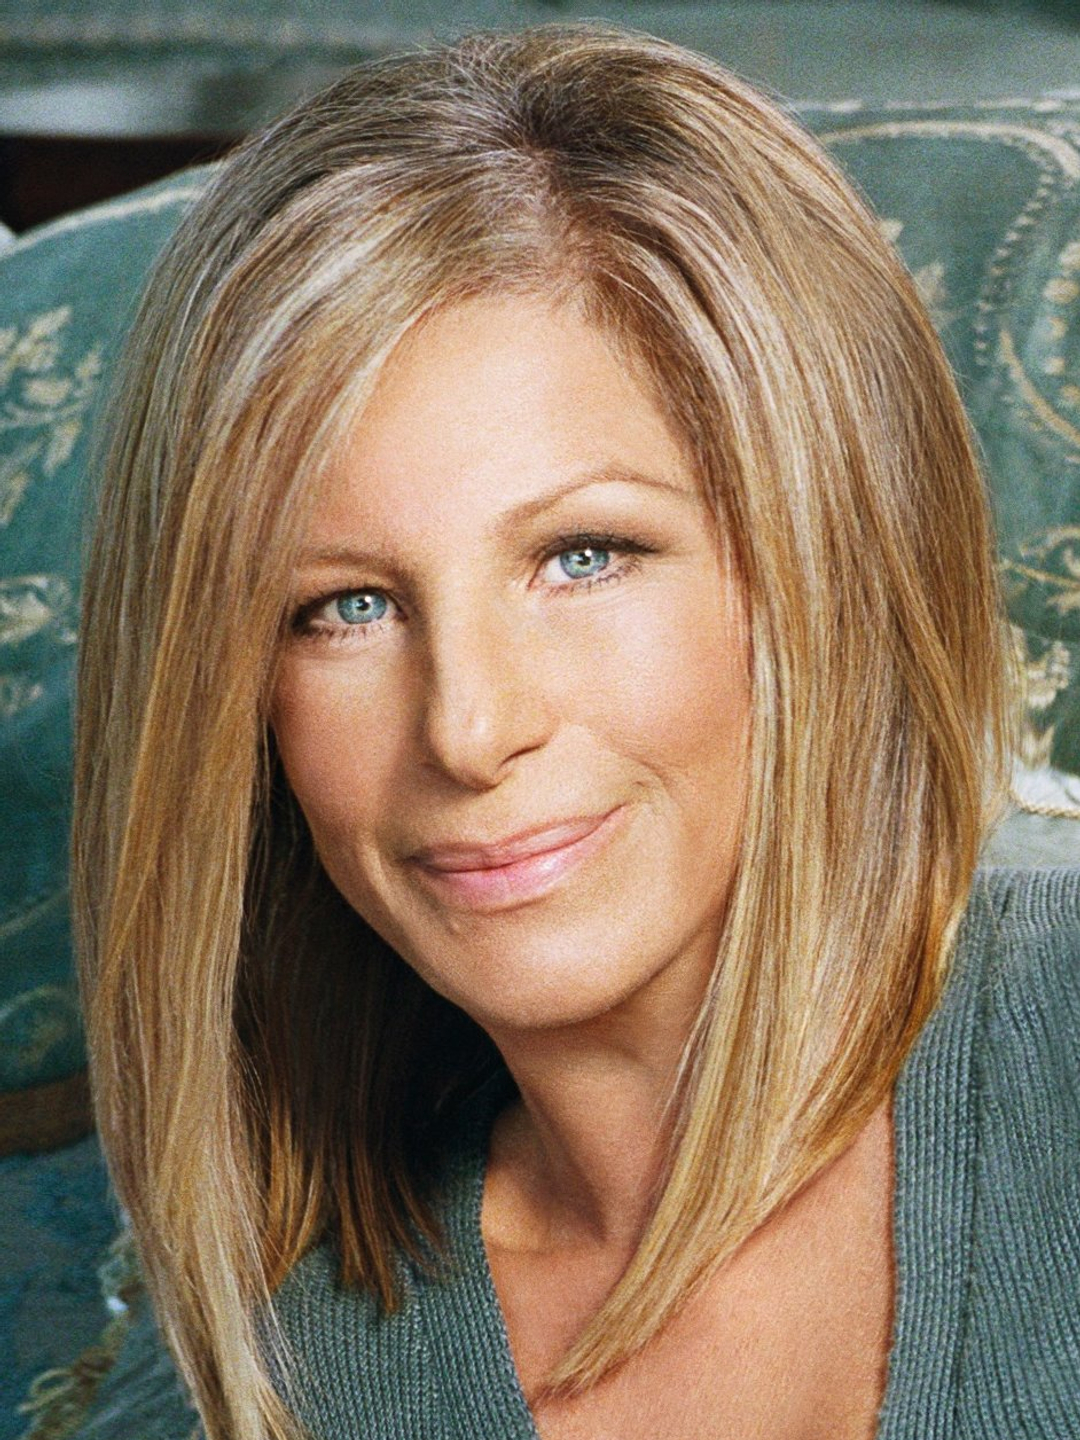 Barbra Streisand in real life